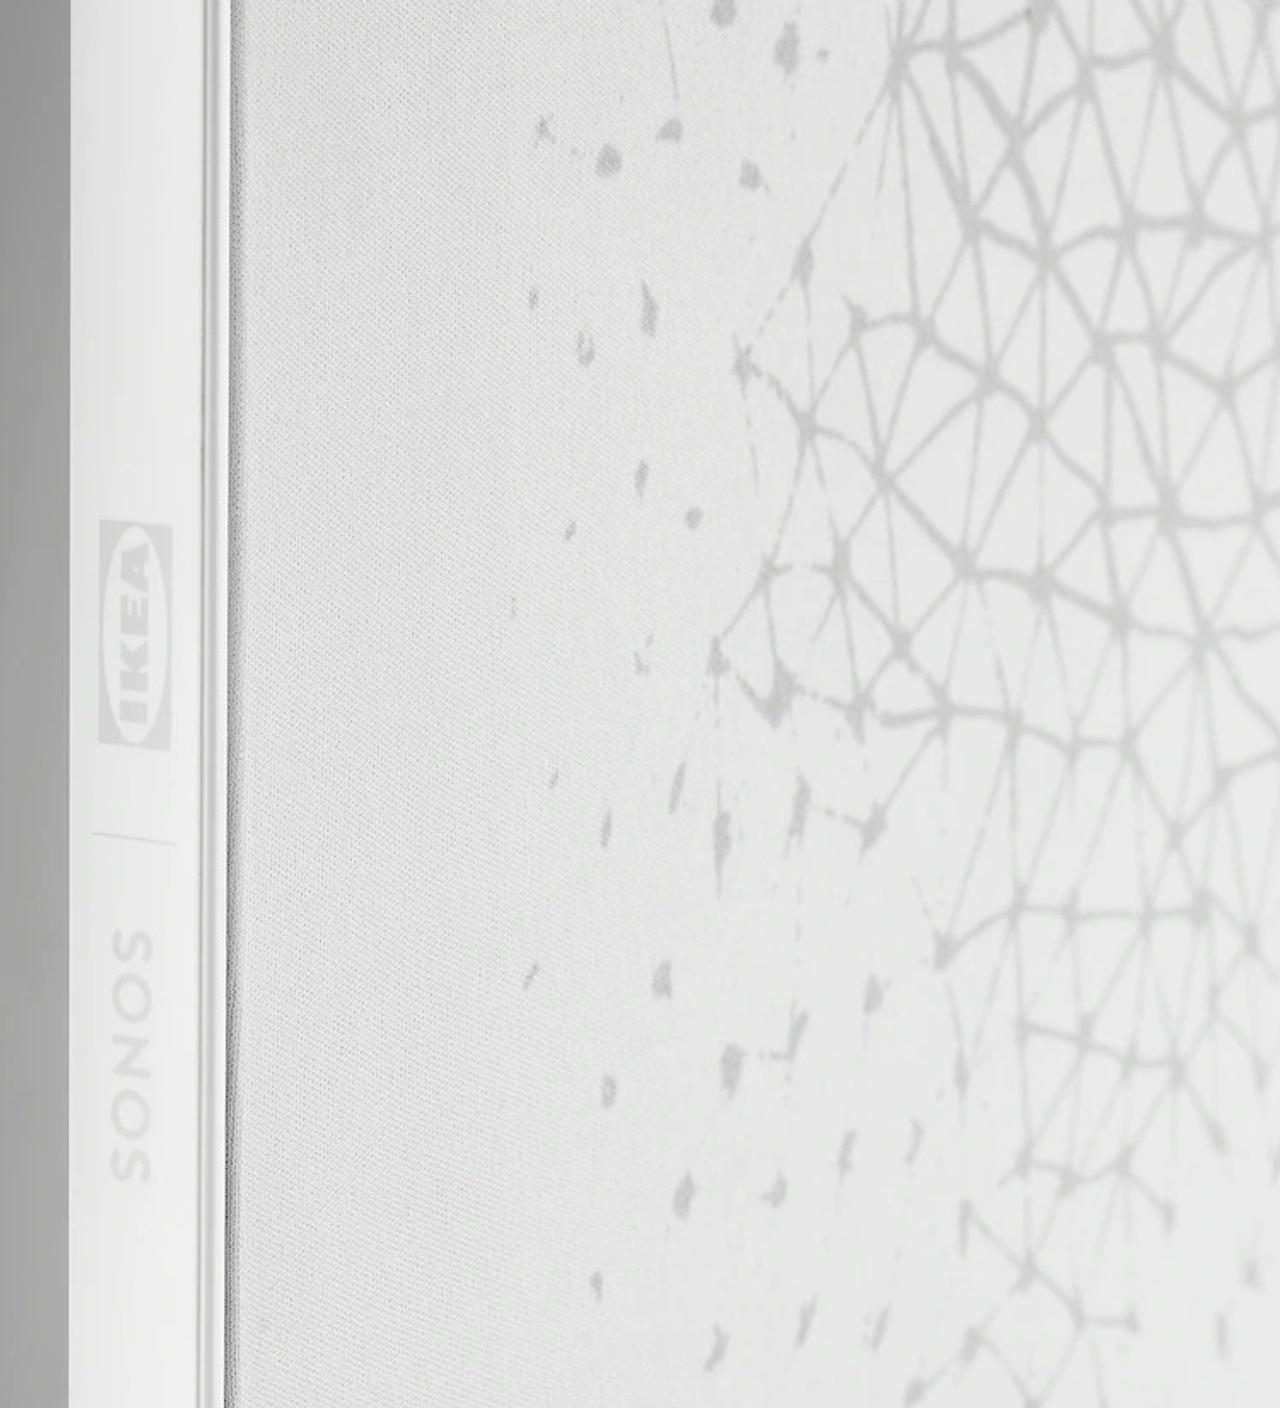 壁にマウントできる薄スピーカー。 IKEA x SonosのSymfoniskがフライング掲載